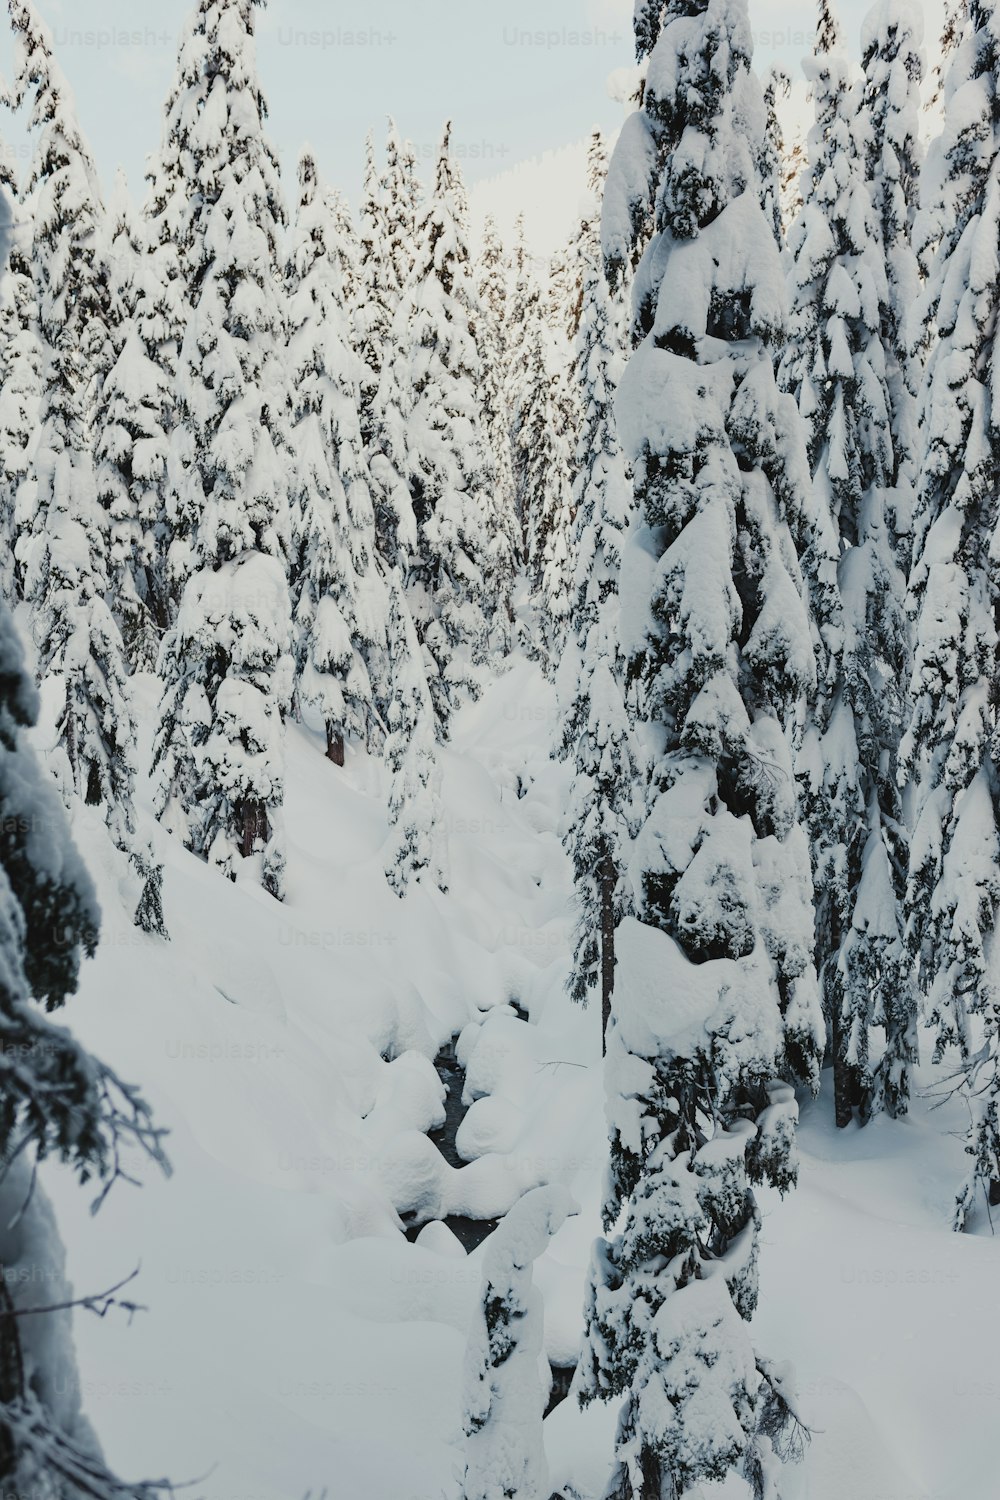 Una persona en esquís en medio de un bosque nevado